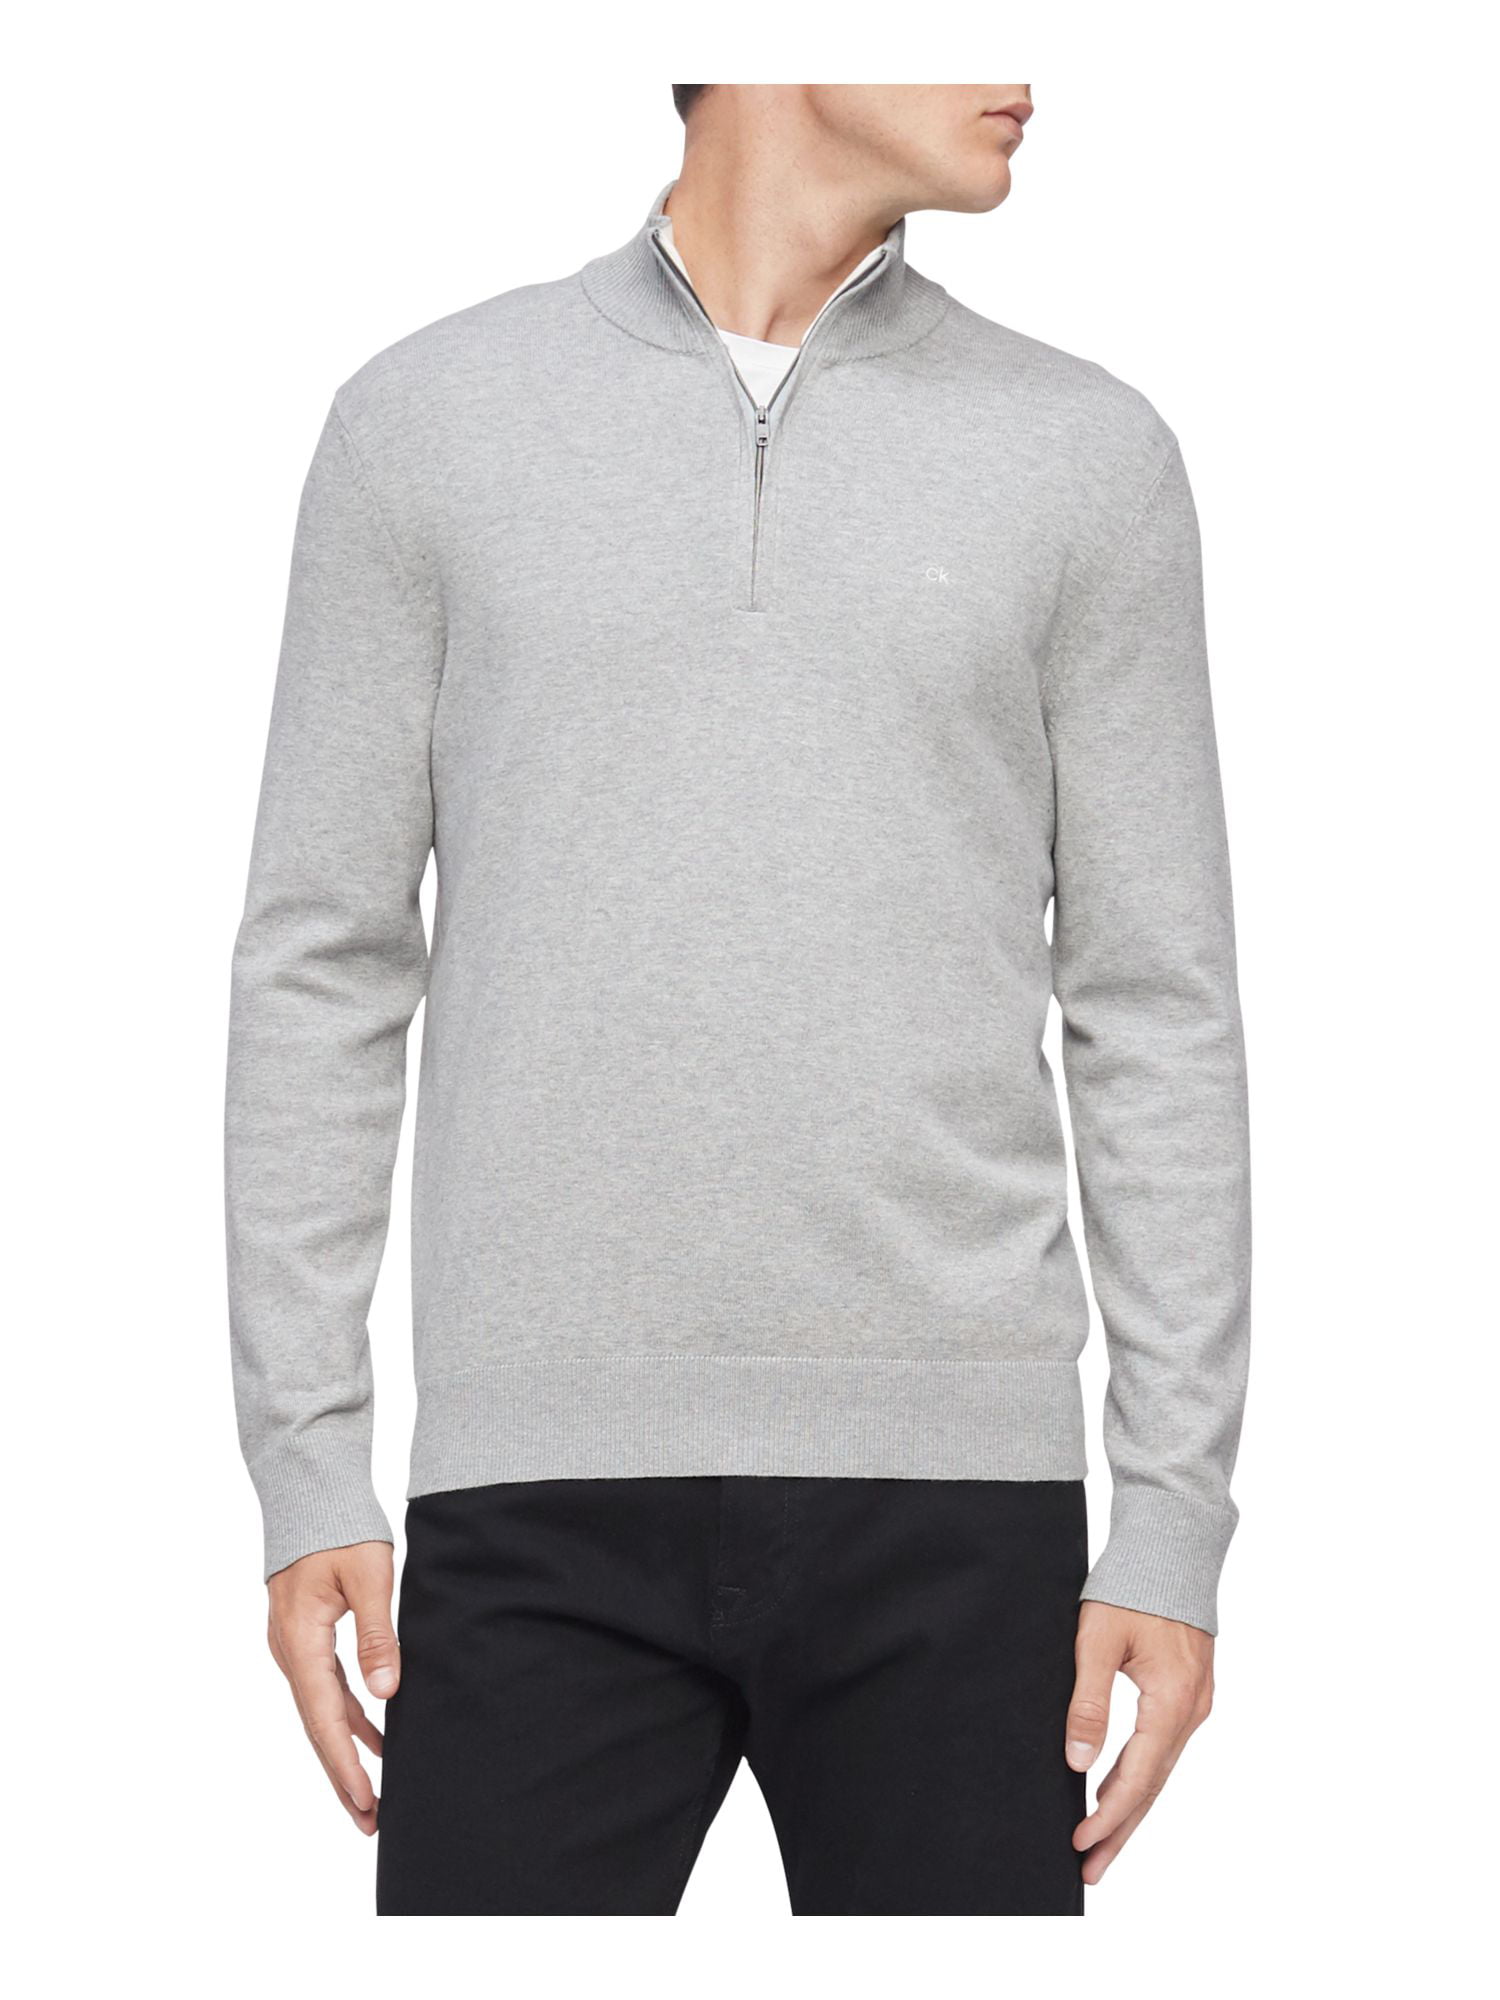 CALVIN KLEIN Mens Lightweight, Long Sleeve Quarter-Zip Pullover Sweater S - Walmart.com